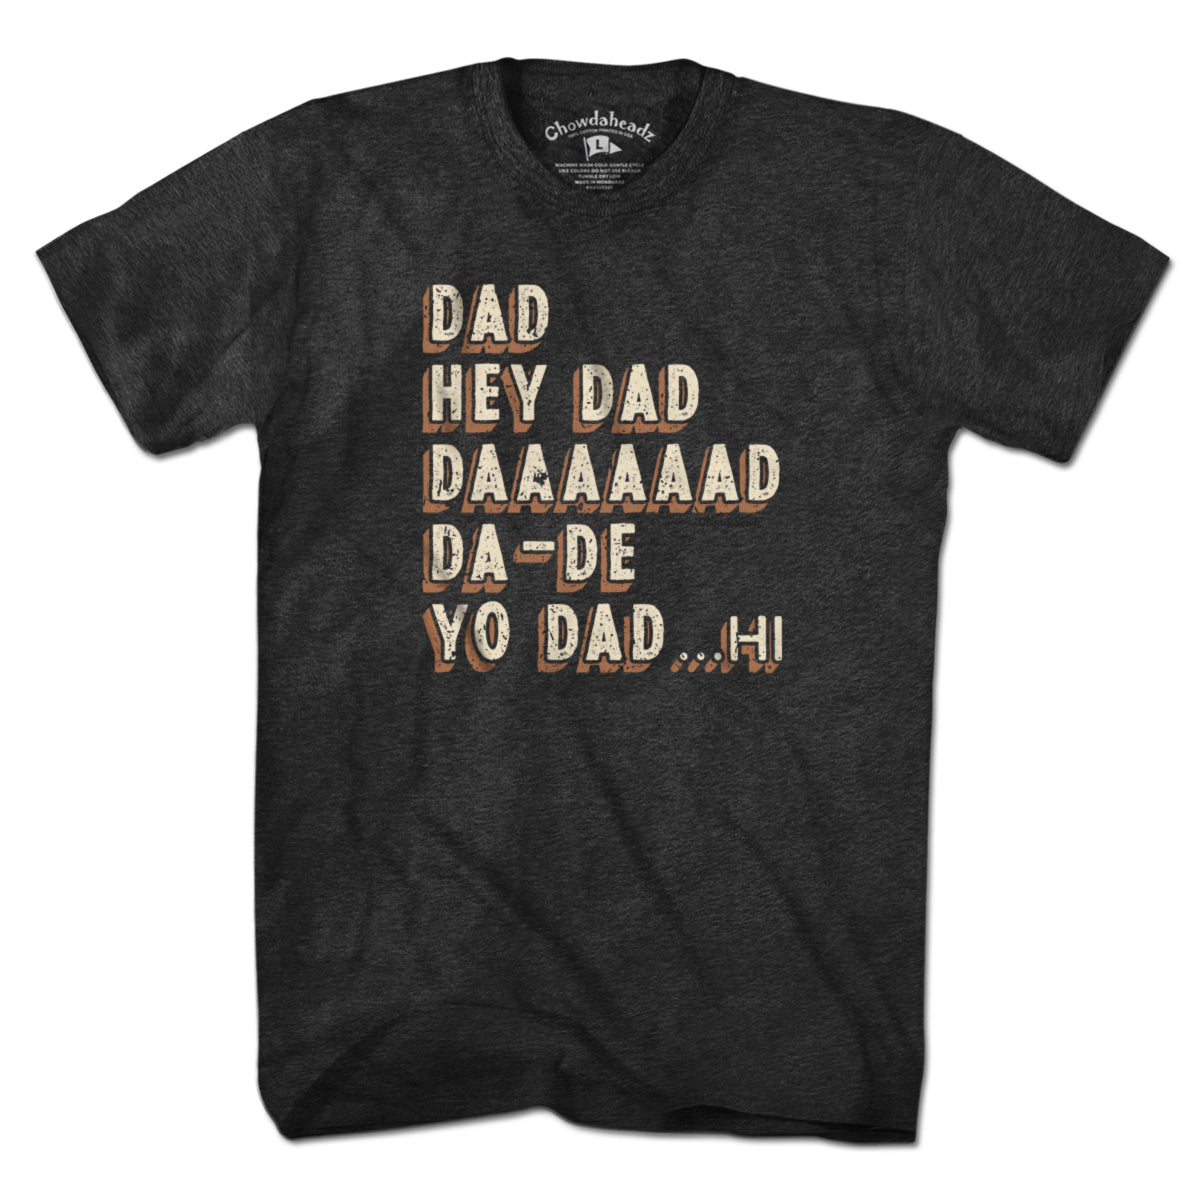 Hey Dad... T-Shirt - Chowdaheadz